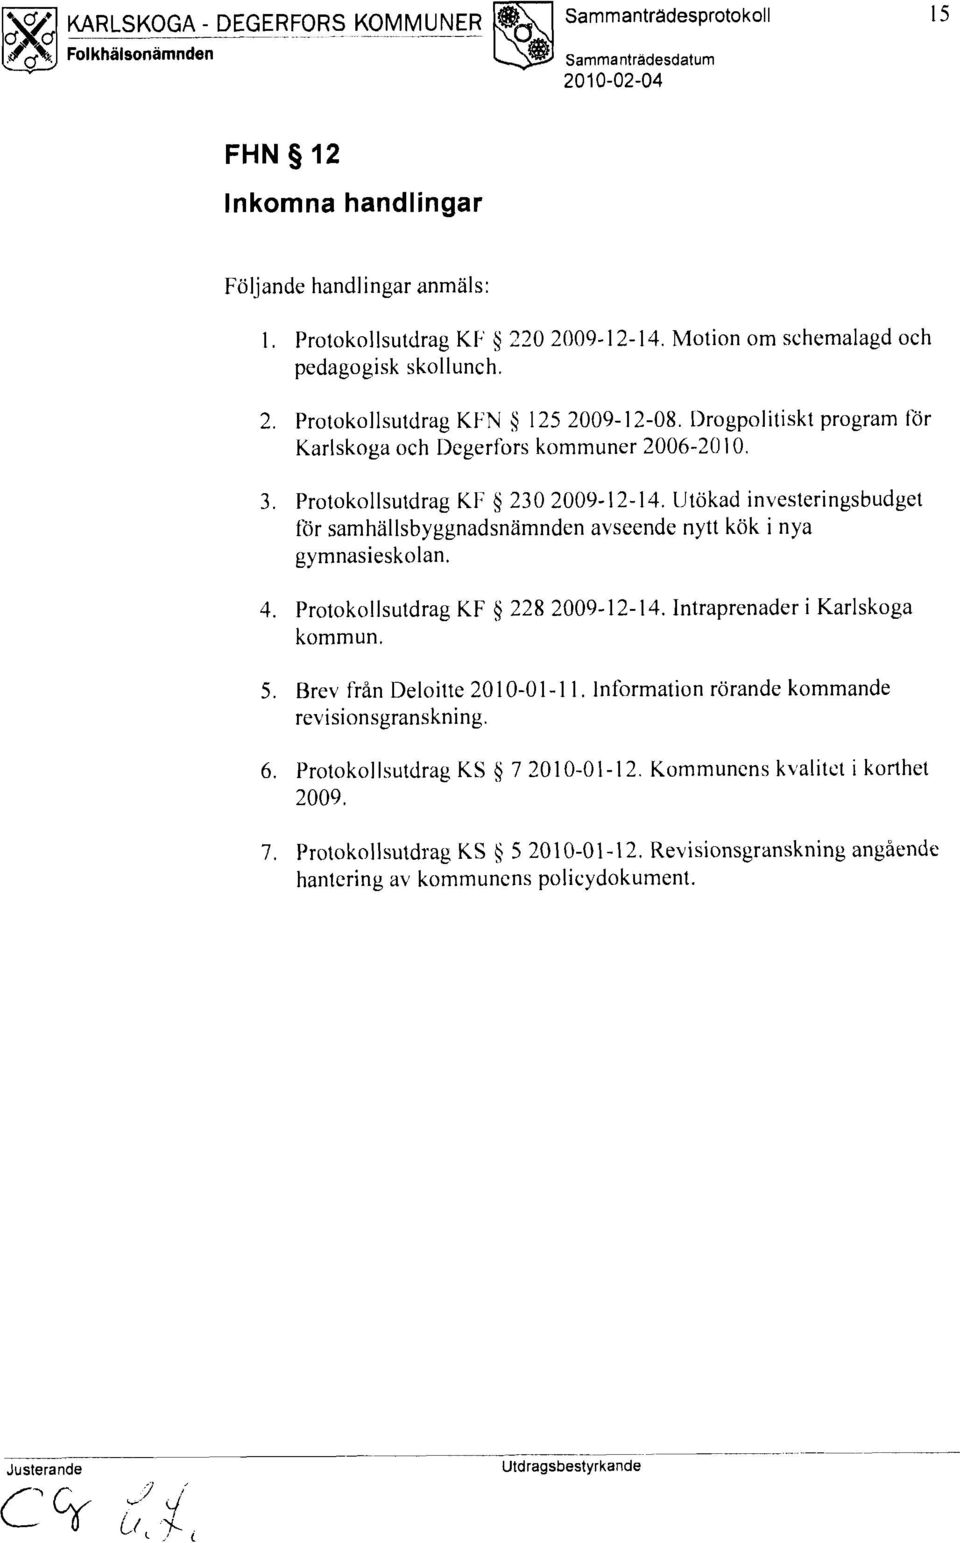 Protokollsutdrag Kl: Ij 230 2009-12-14. IJtökad investeringsbudget för samhallsbyggnadsnamnden avseende nytt kök i nya gymnasieskolan. 4. Protokollsutdrag KF Ij 228 2009-12-14.